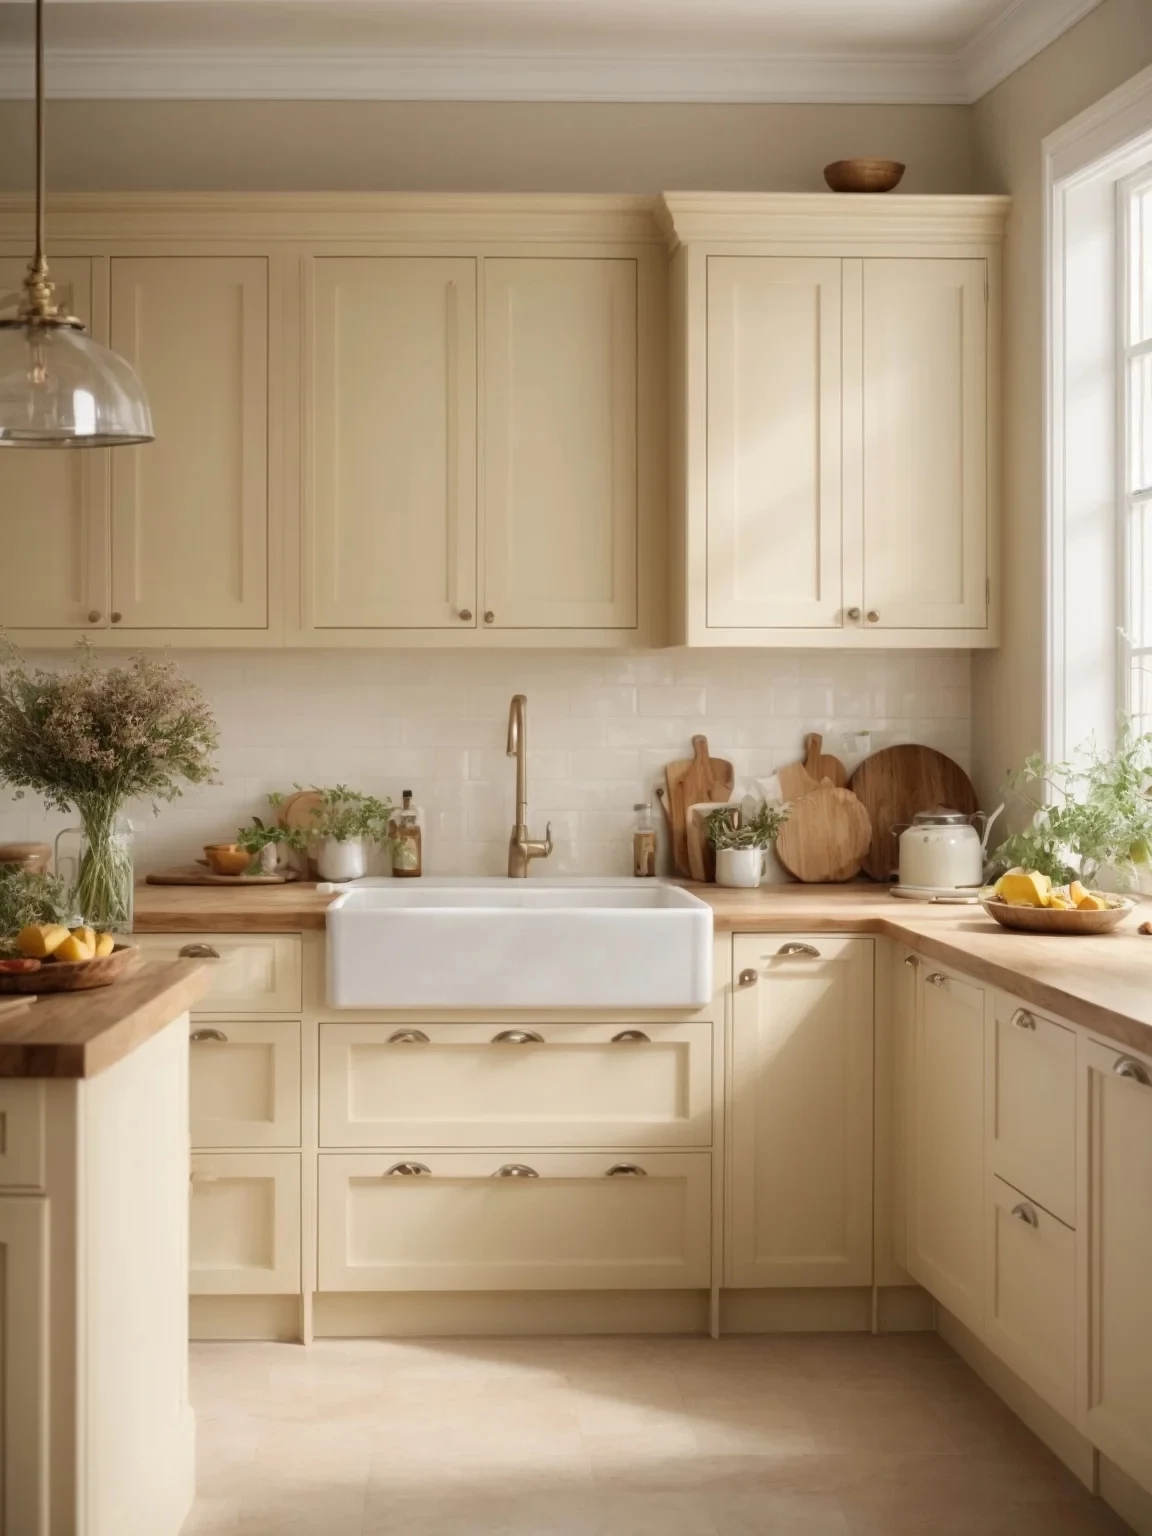 cream colored kitchen cabinet ideas